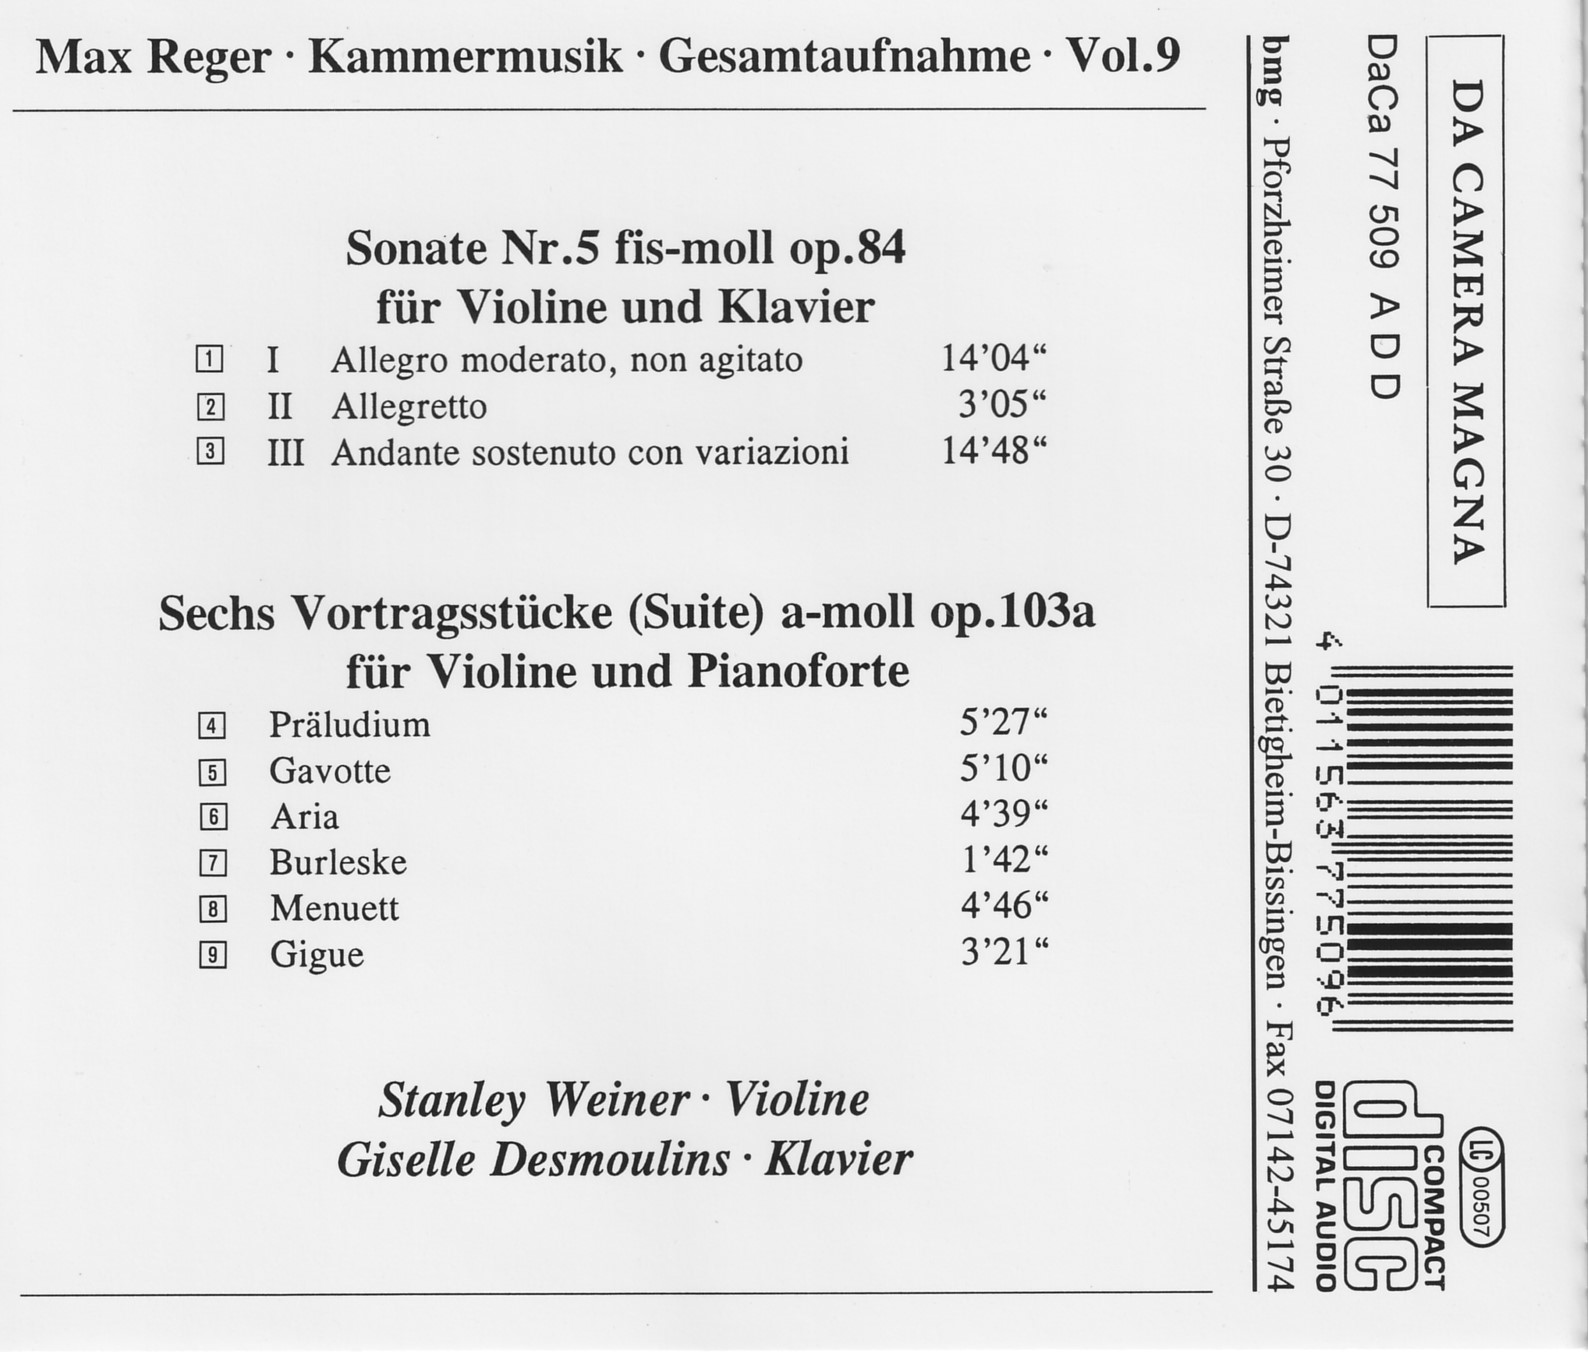 Max Reger - Kammermusik komplett Vol. 9